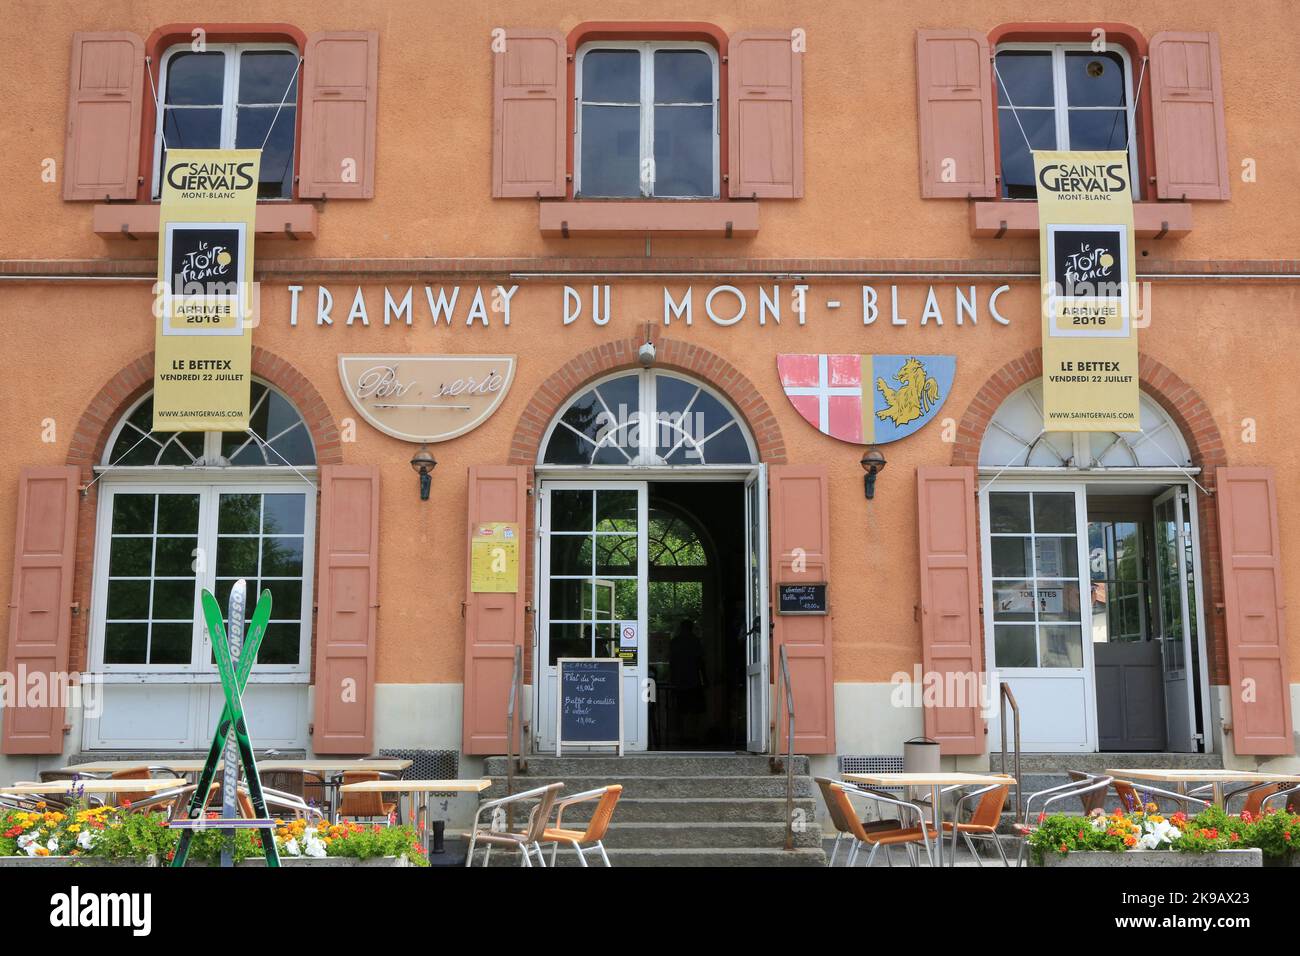 Tramway du Mont-Blanc. Le Tour de France. Vendredi 22 juillet 2016. Saint-Gervais-les-Bains. Haute-Savoie. Auvergne-Rhône-Alpes. France. Europe. Stock Photo